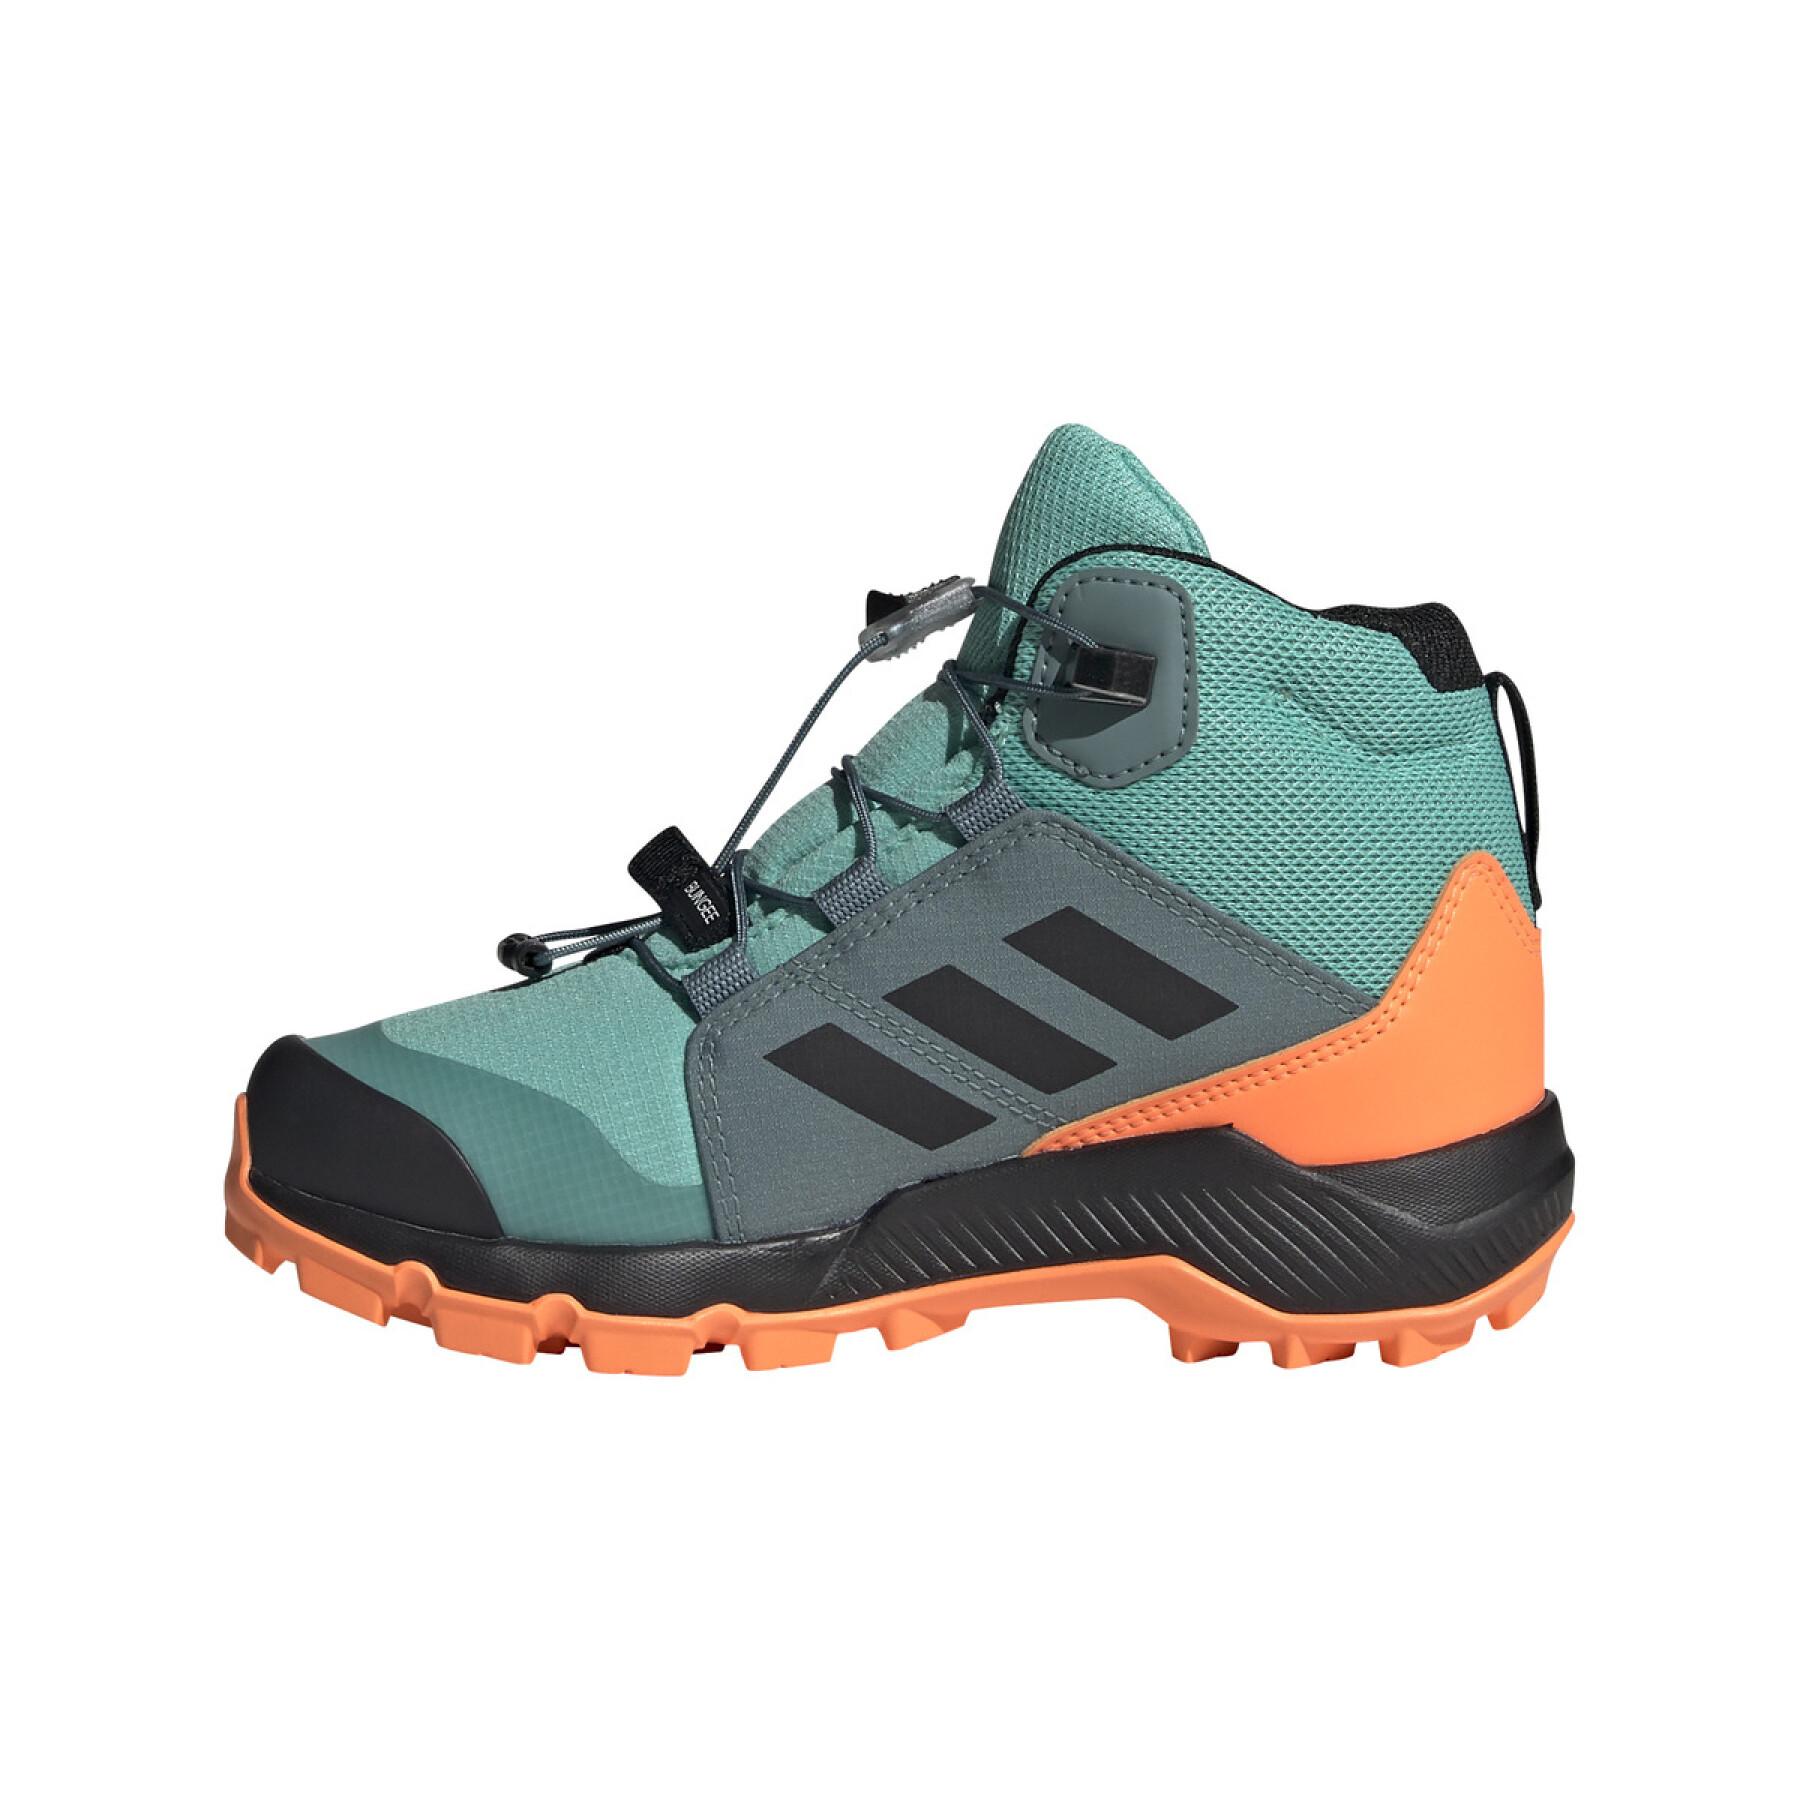 Children's hiking shoes Adidas Terrex Mid Gtx K